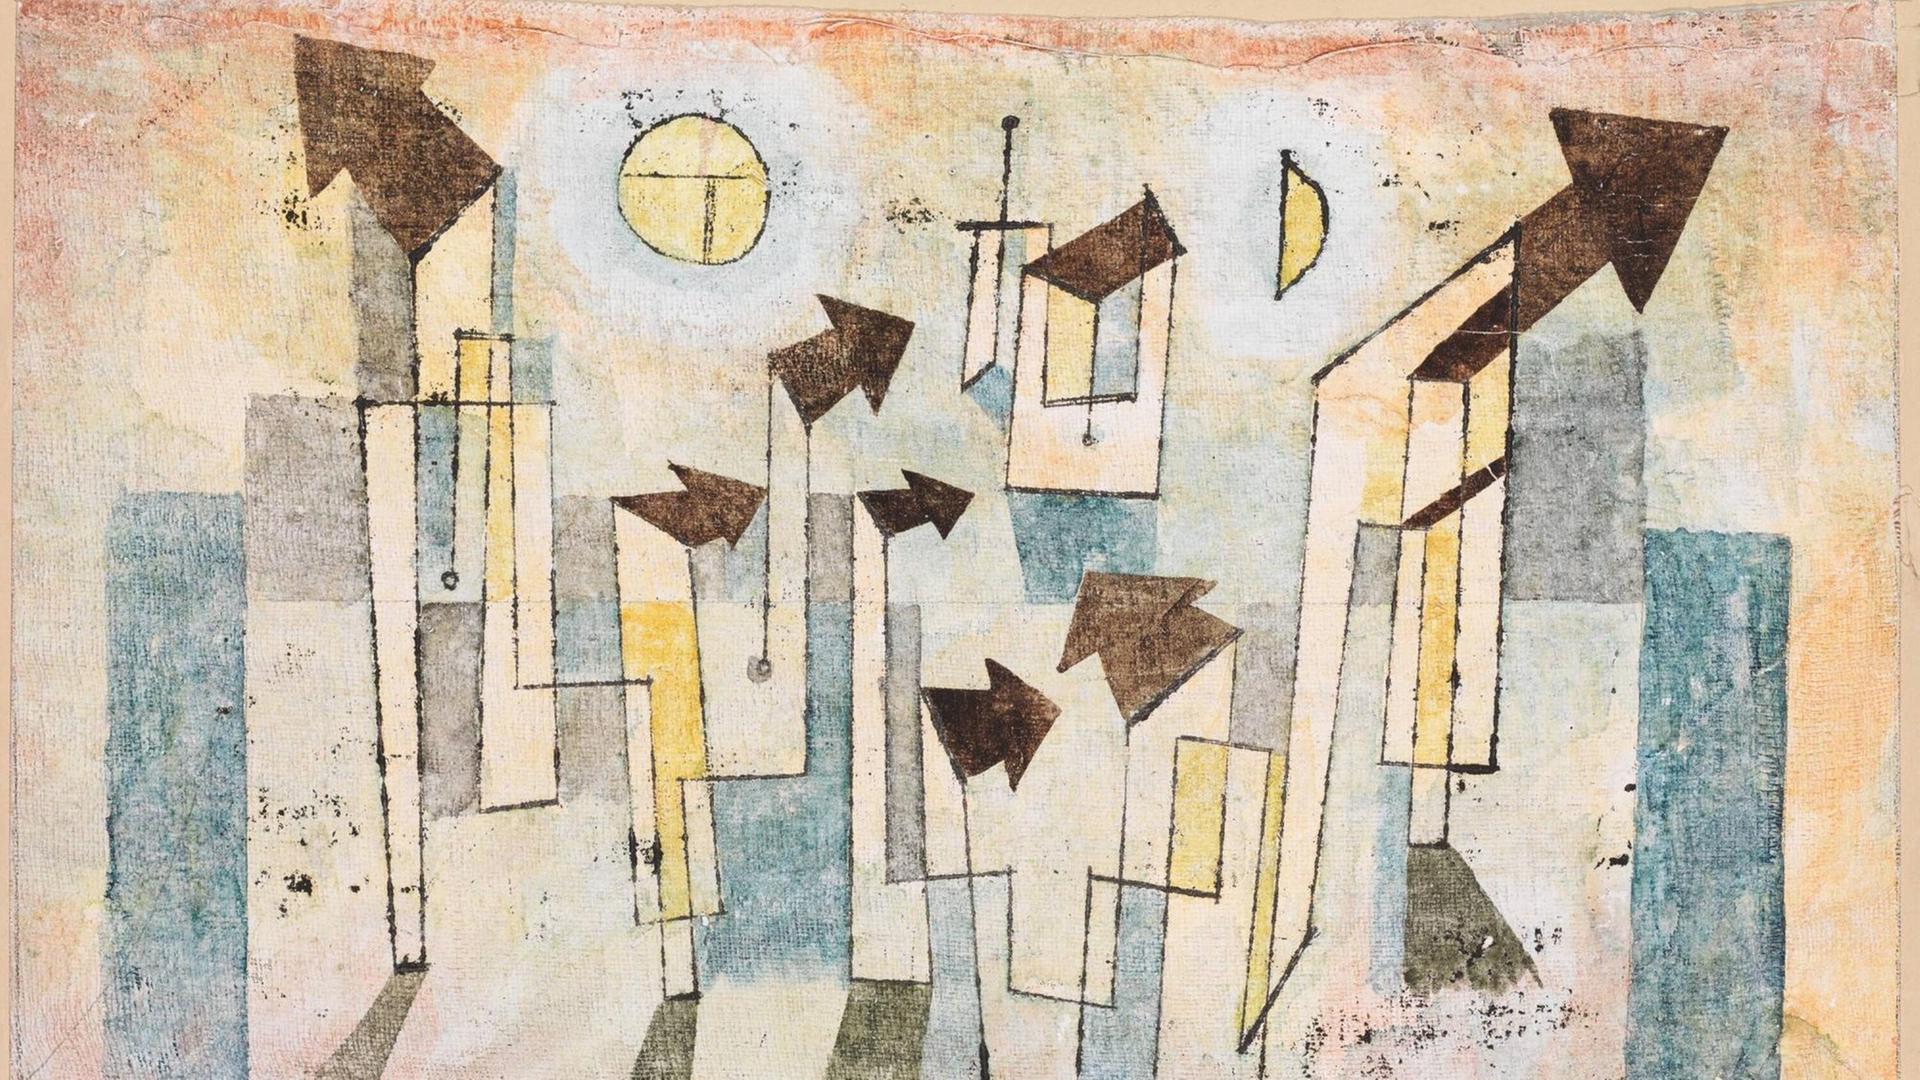 Ein Gemälde von Paul Klee ziegt viele durch die Fläche surrende Pfeile, sie schlagen alle eine unterschiedliche Richtung ein.